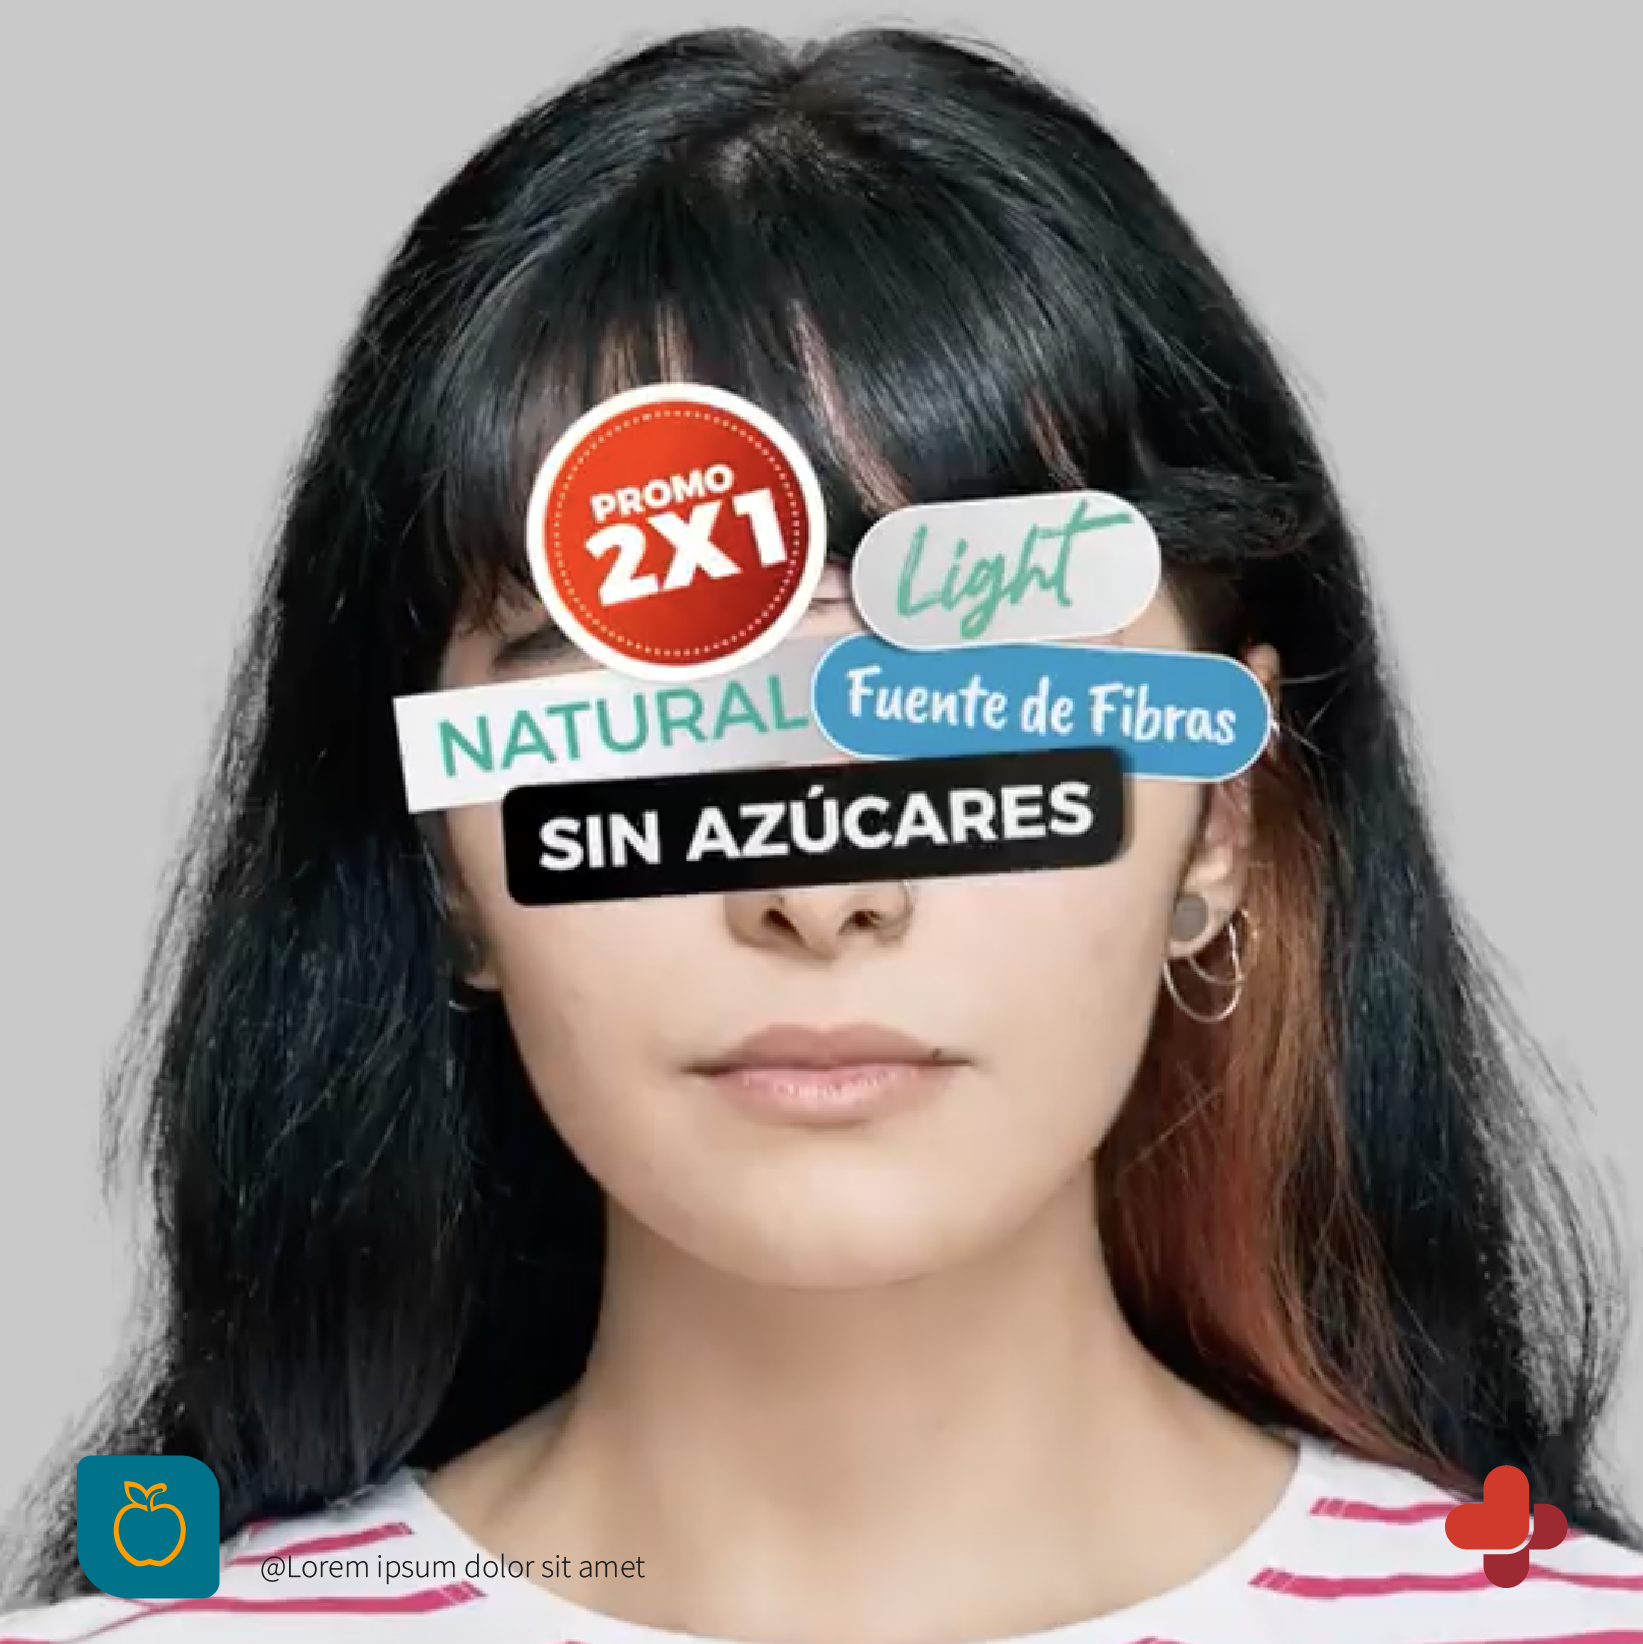 Diseño de campaña de etiquetado frontal con la identidad de la ONG aplicada.